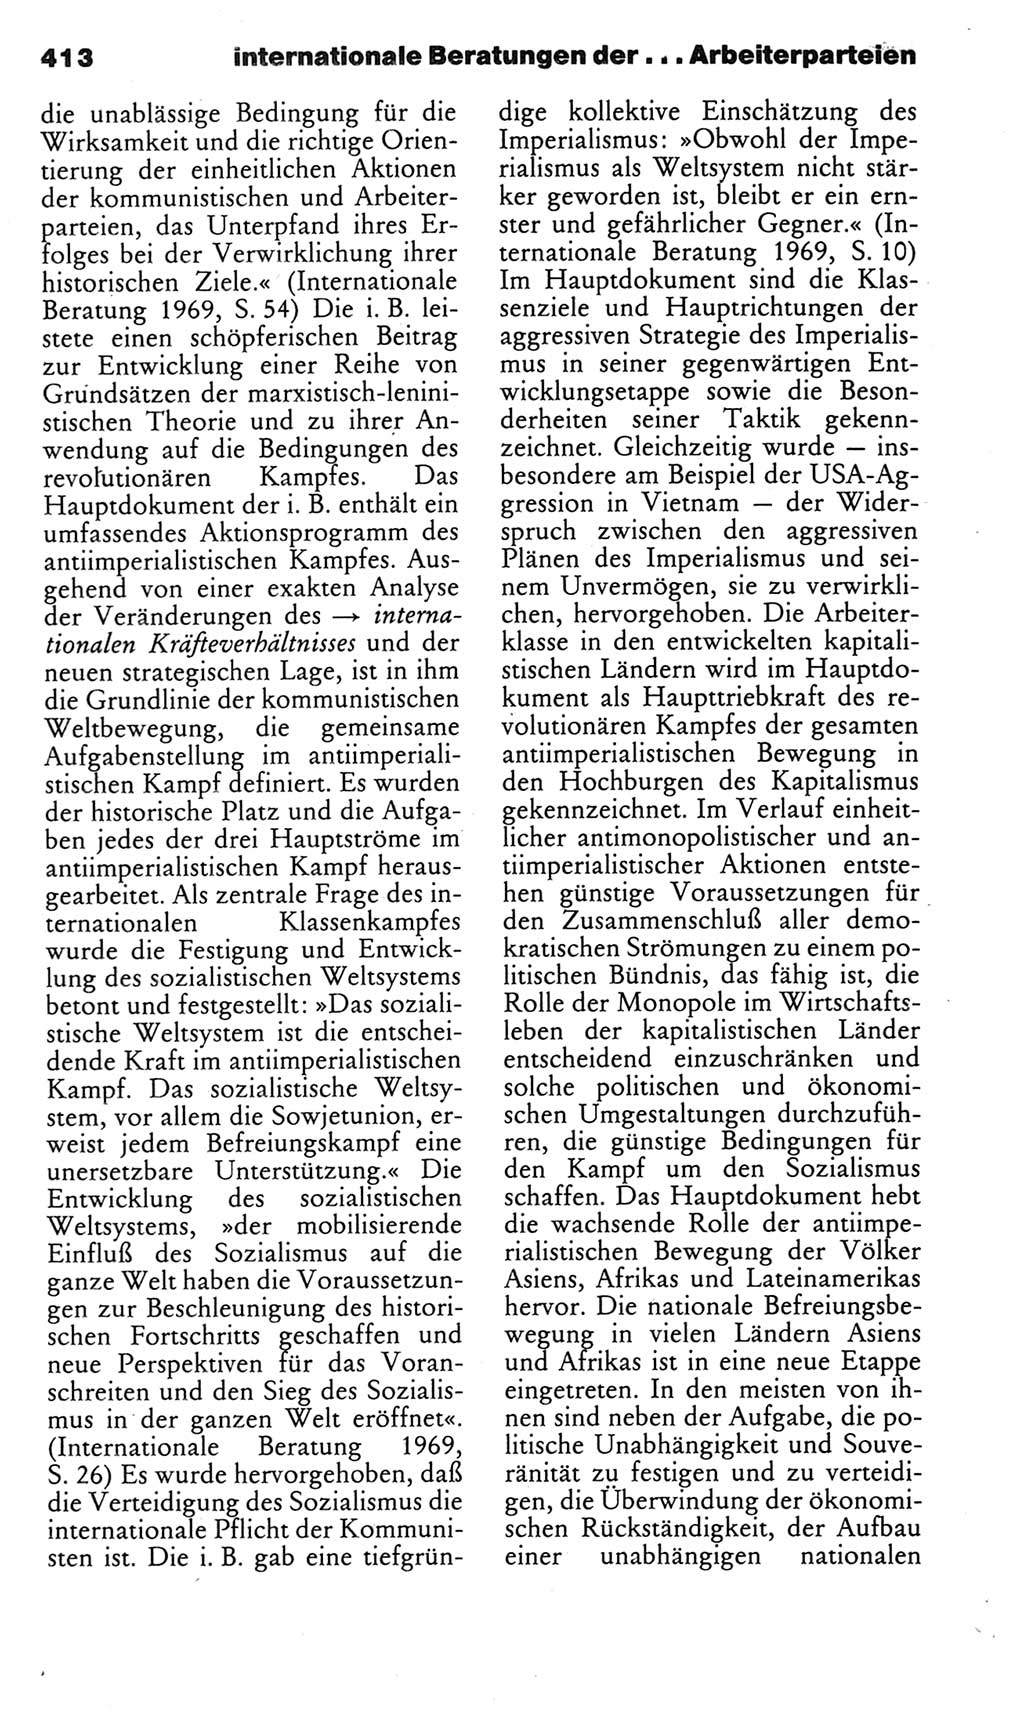 Kleines politisches Wörterbuch [Deutsche Demokratische Republik (DDR)] 1983, Seite 413 (Kl. pol. Wb. DDR 1983, S. 413)